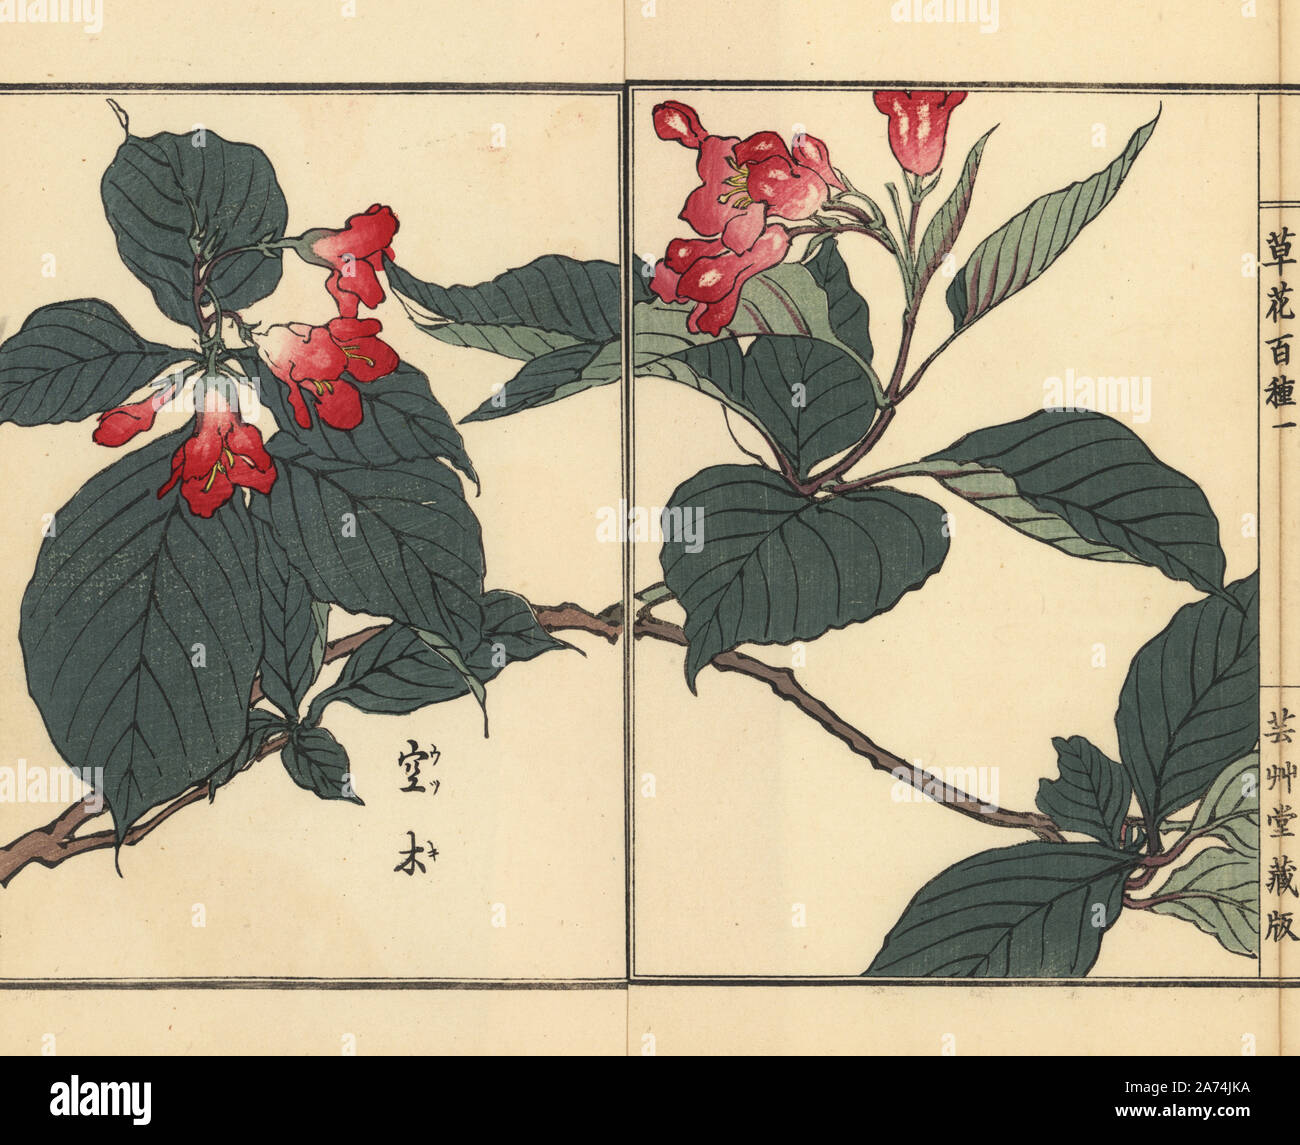 Utsugi or crenate deutzia, Deutzia crenata. Handcoloured woodblock print by Kono Bairei from Kusa Bana Hyakushu (One Hundred Varieties of Flowers), Tokyo, Yamada, 1901. Stock Photo